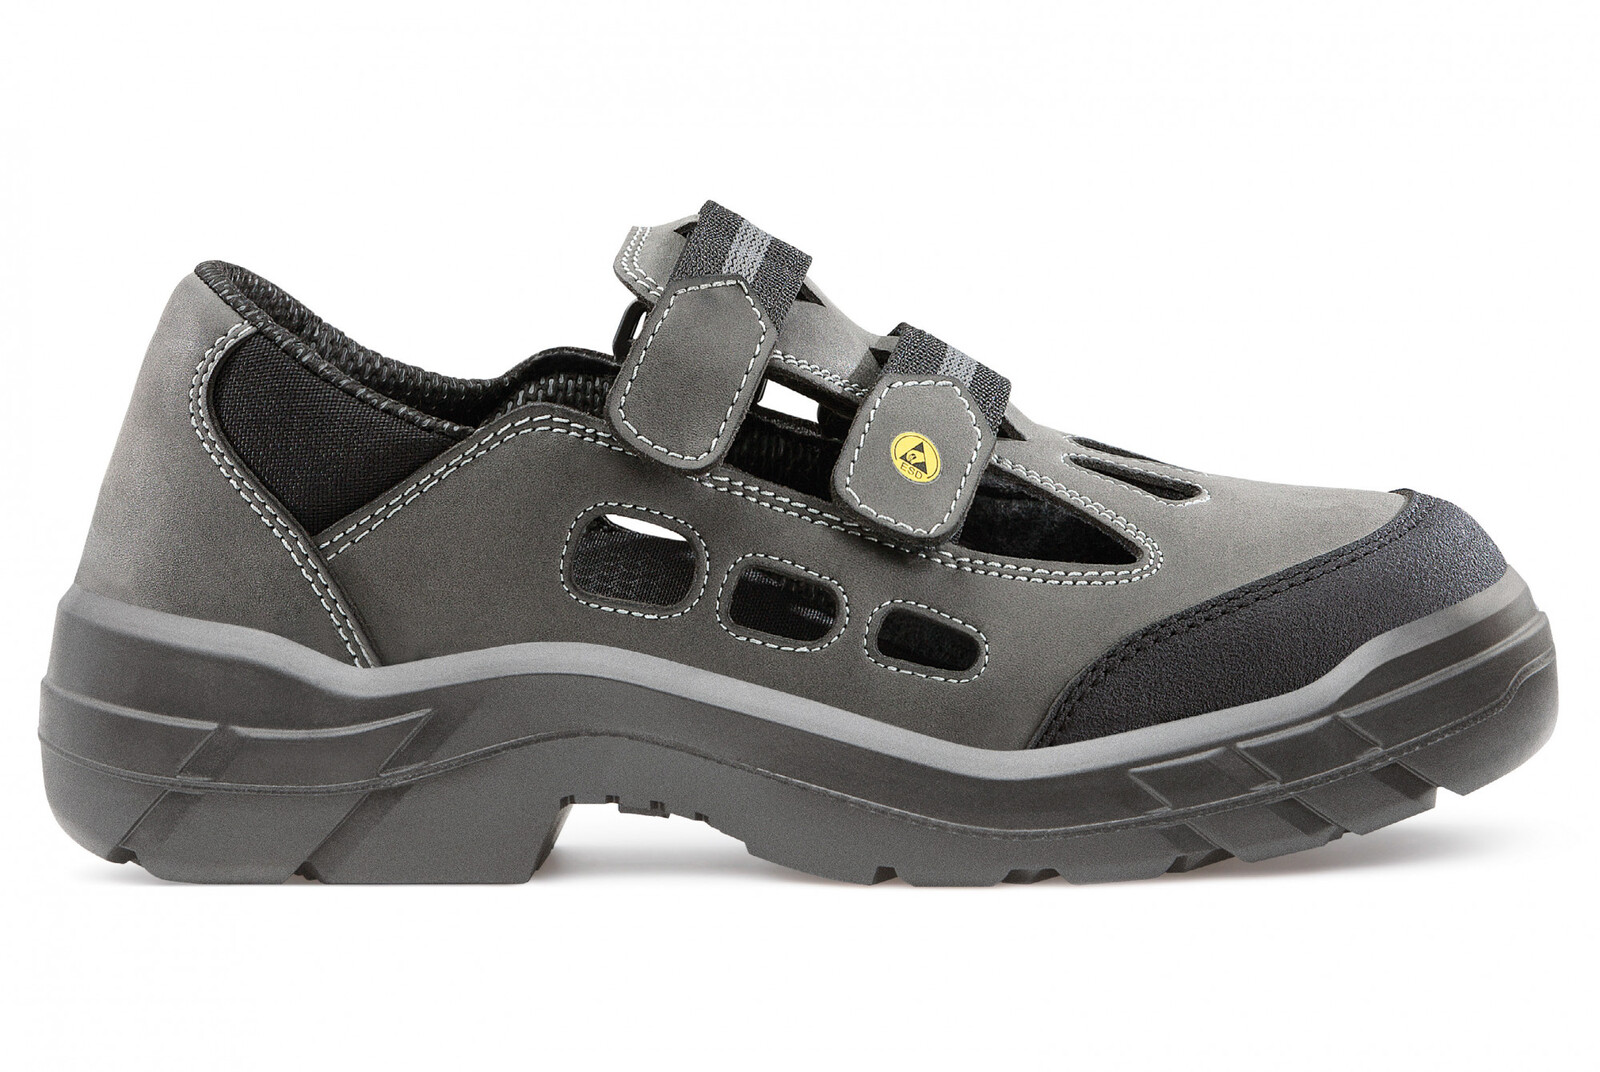 Bezpečnostné sandále  Artra Arjun 903 2560 S1 SRC ESD - veľkosť: 45, farba: sivá/čierna